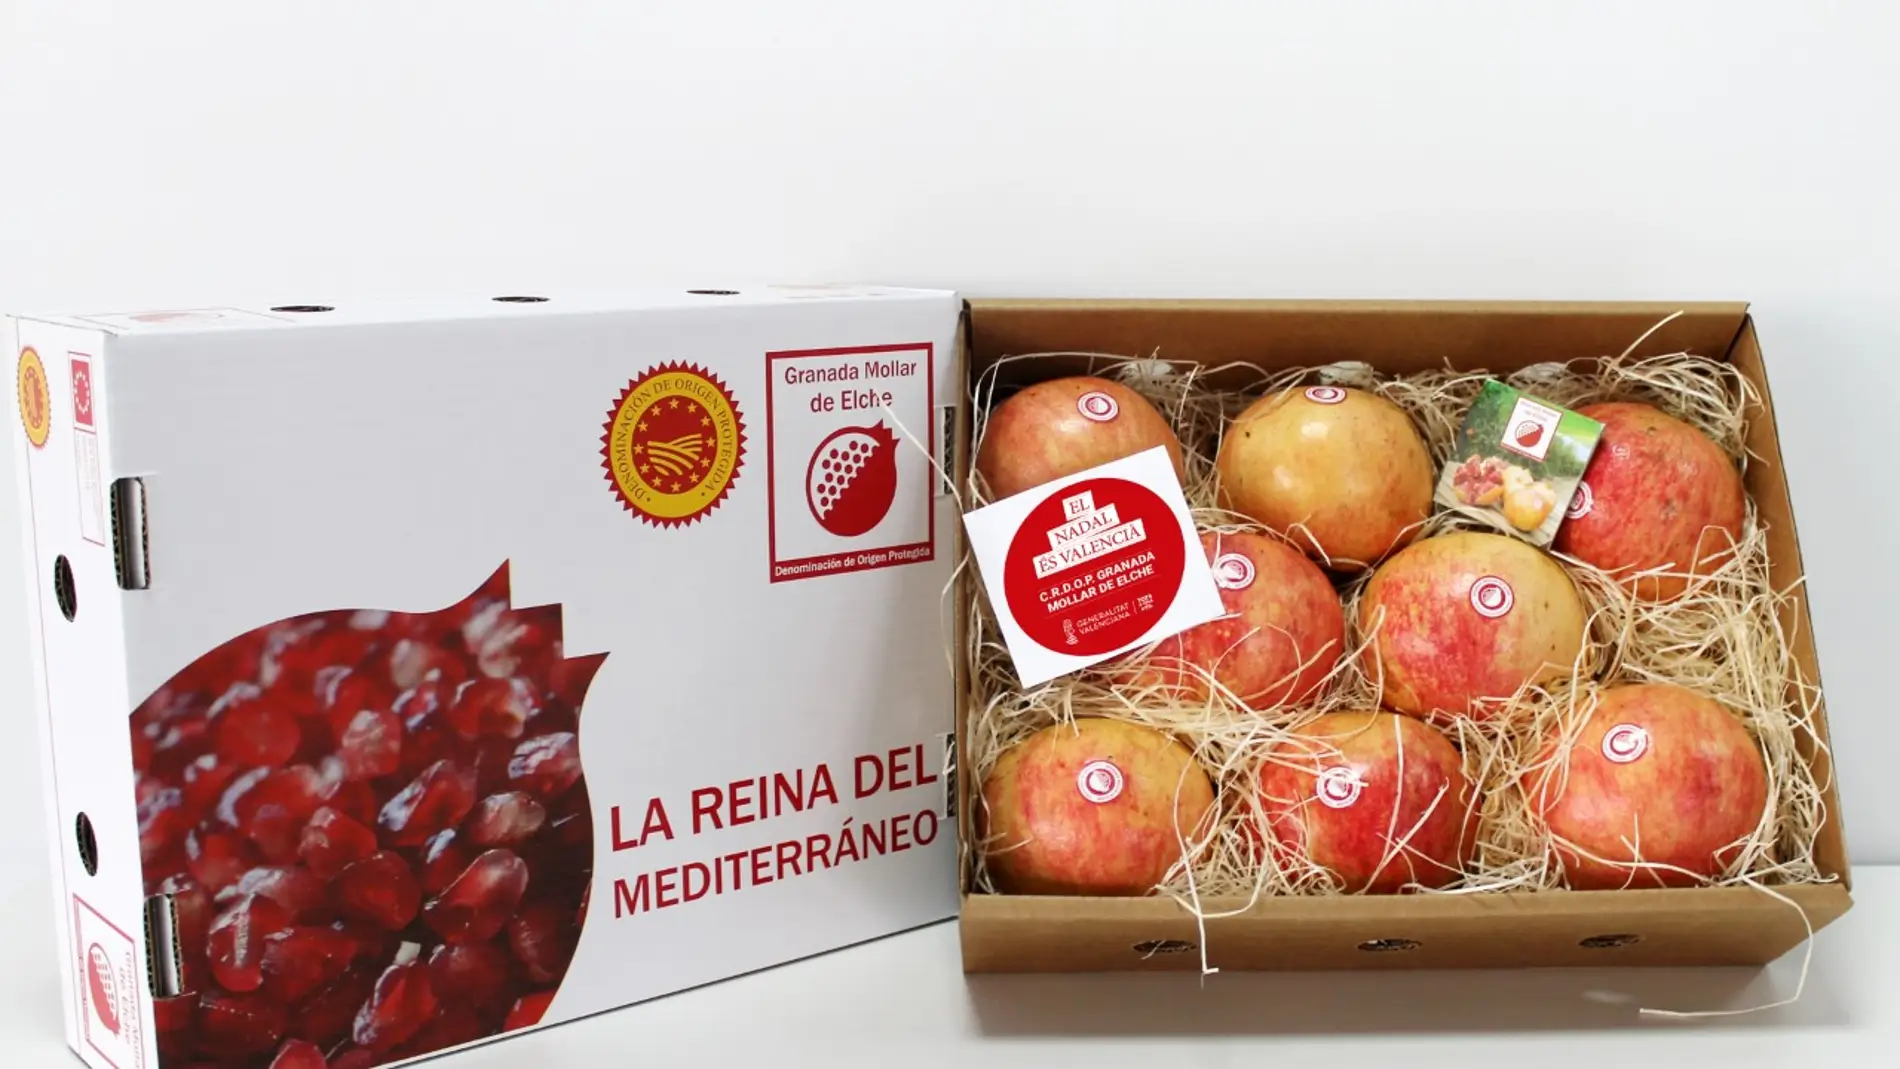  La DOP granada mollar envía por Navidad 250 cajas con ese fruto a valencianos que residen fuera de Elche.